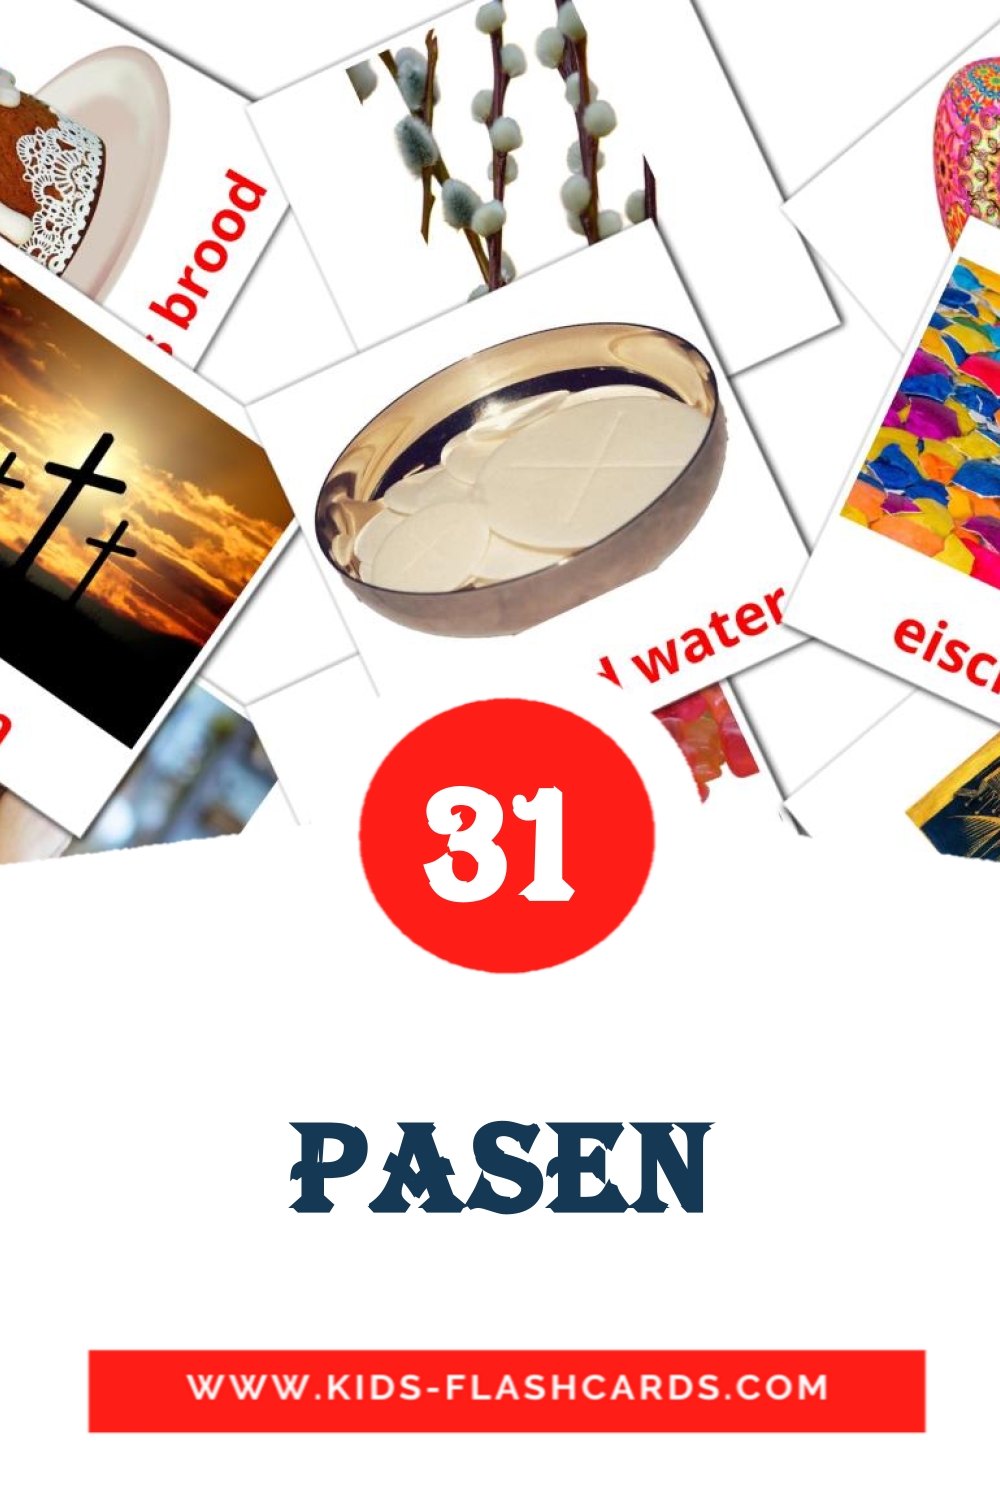 31 Pasen fotokaarten voor kleuters in het nederlands